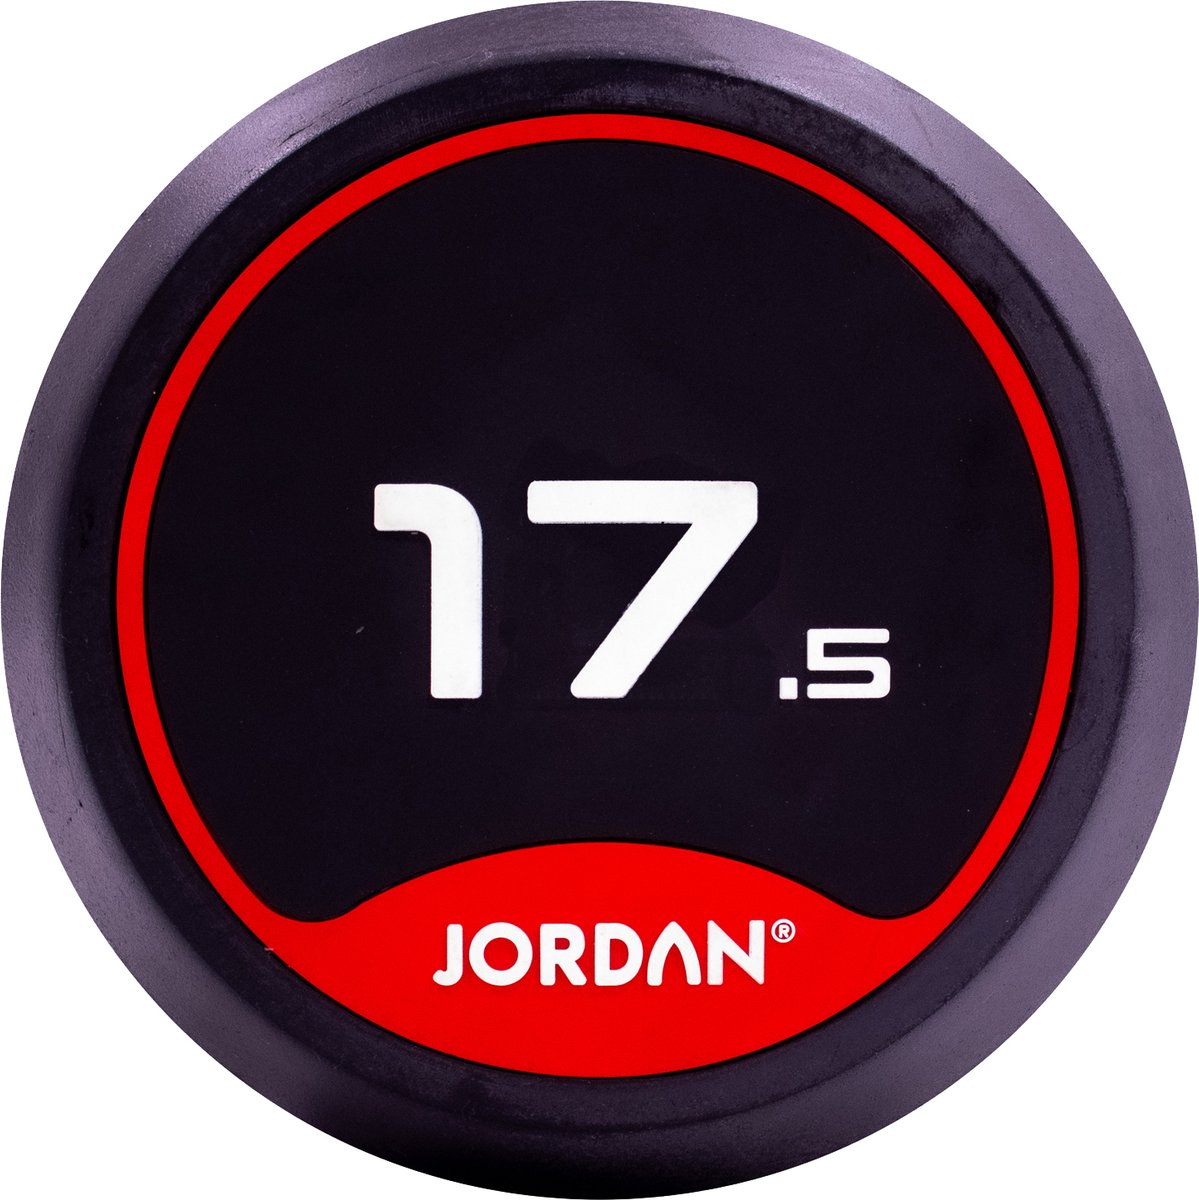 Jordan Fitness 17.5kg Rubber Dumbbells (Pair) - Red